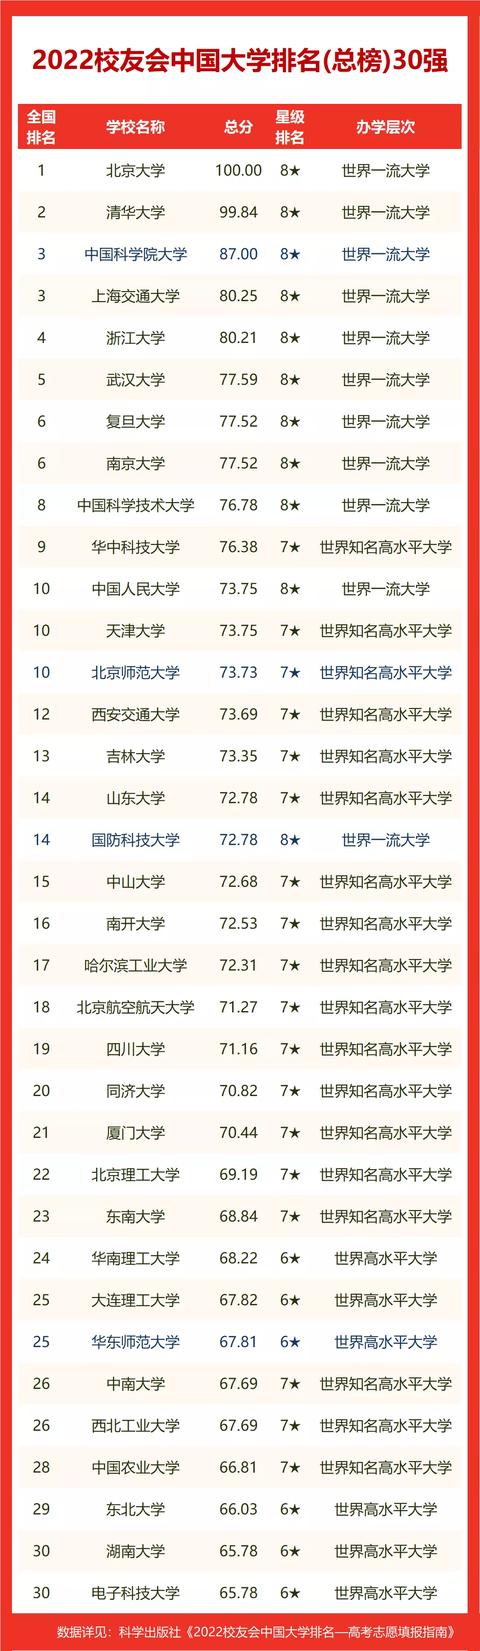 辽宁大学排名2022最新排名榜 辽宁大学最新排名榜